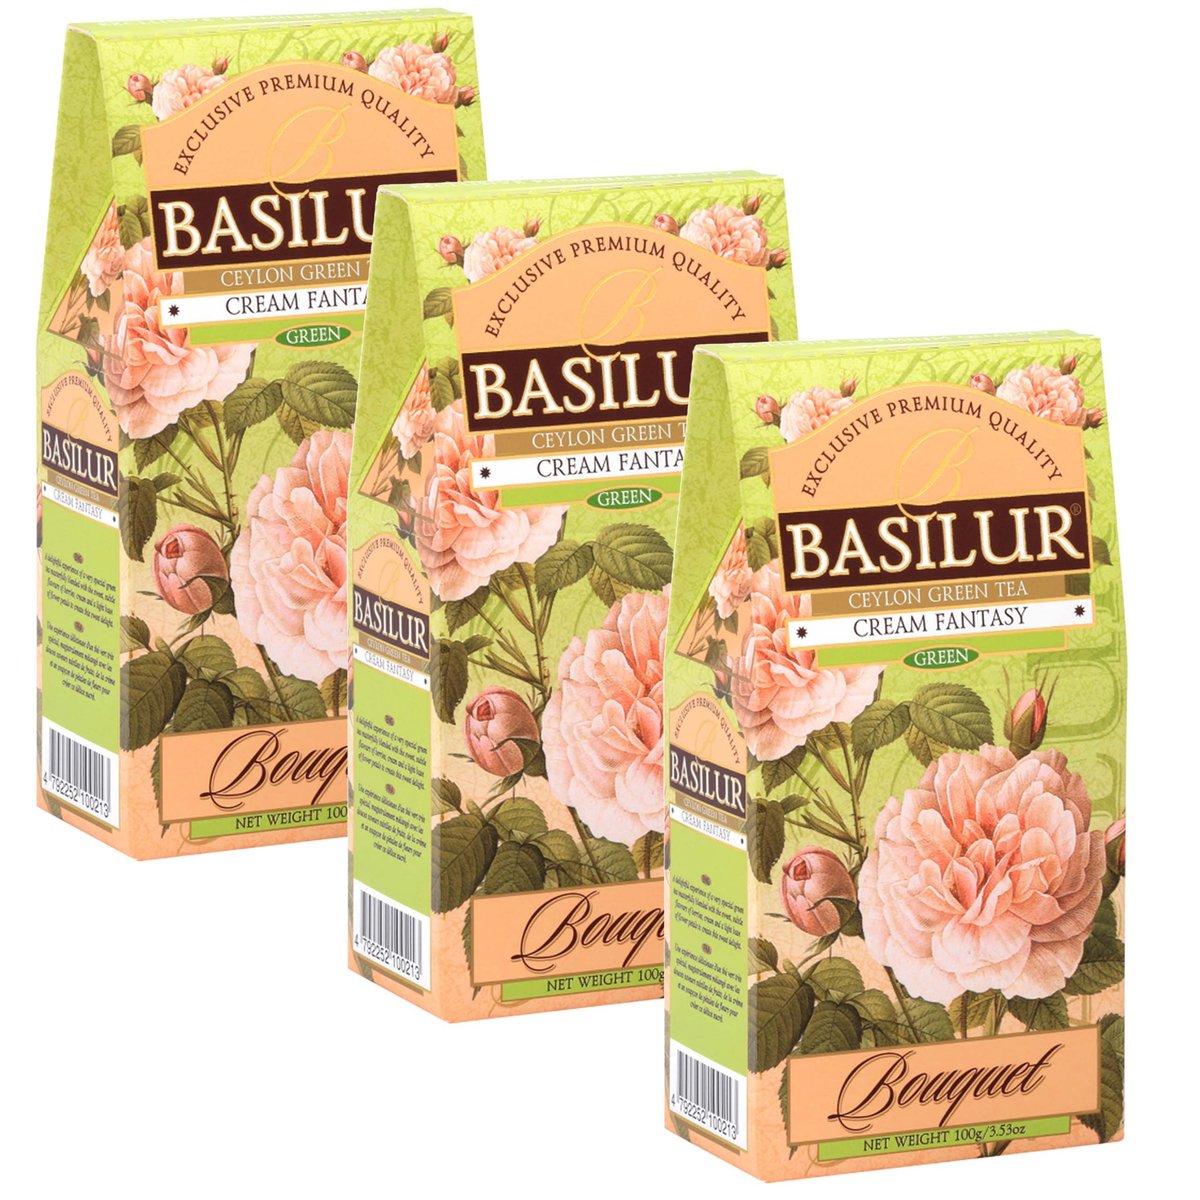 BASILUR Cream Fantasy- Zielonej herbaty cejlońskiej z dodatkiem aromatów owocowych, 100 g x3